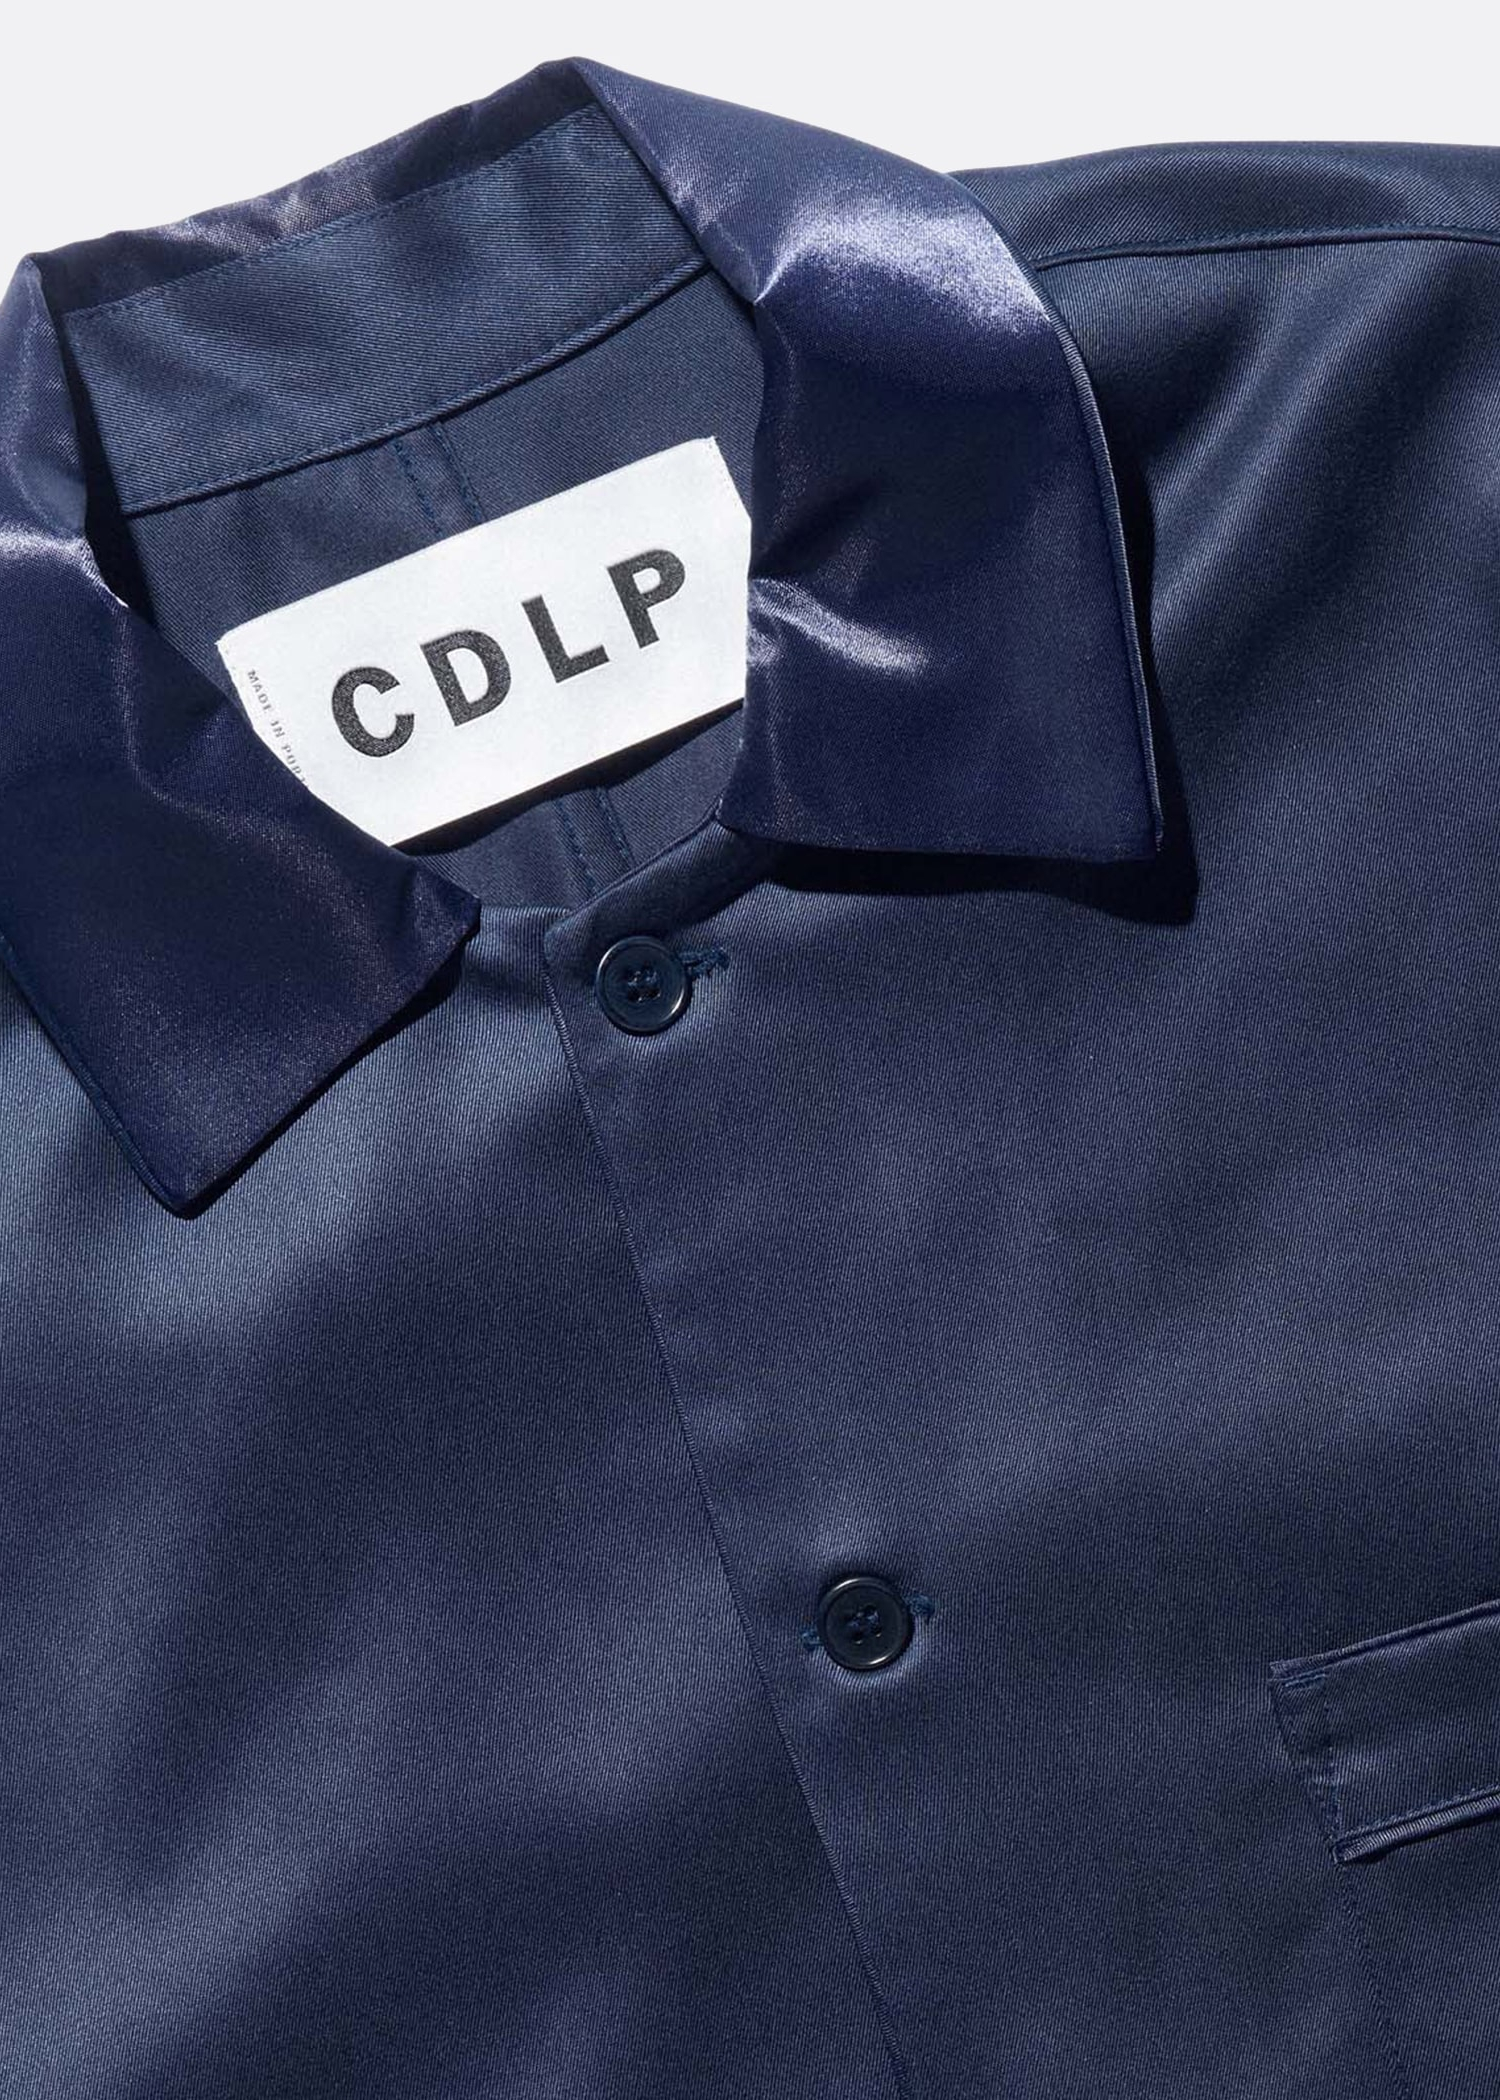 CDLP Home Suit Short Sleeve Shirt